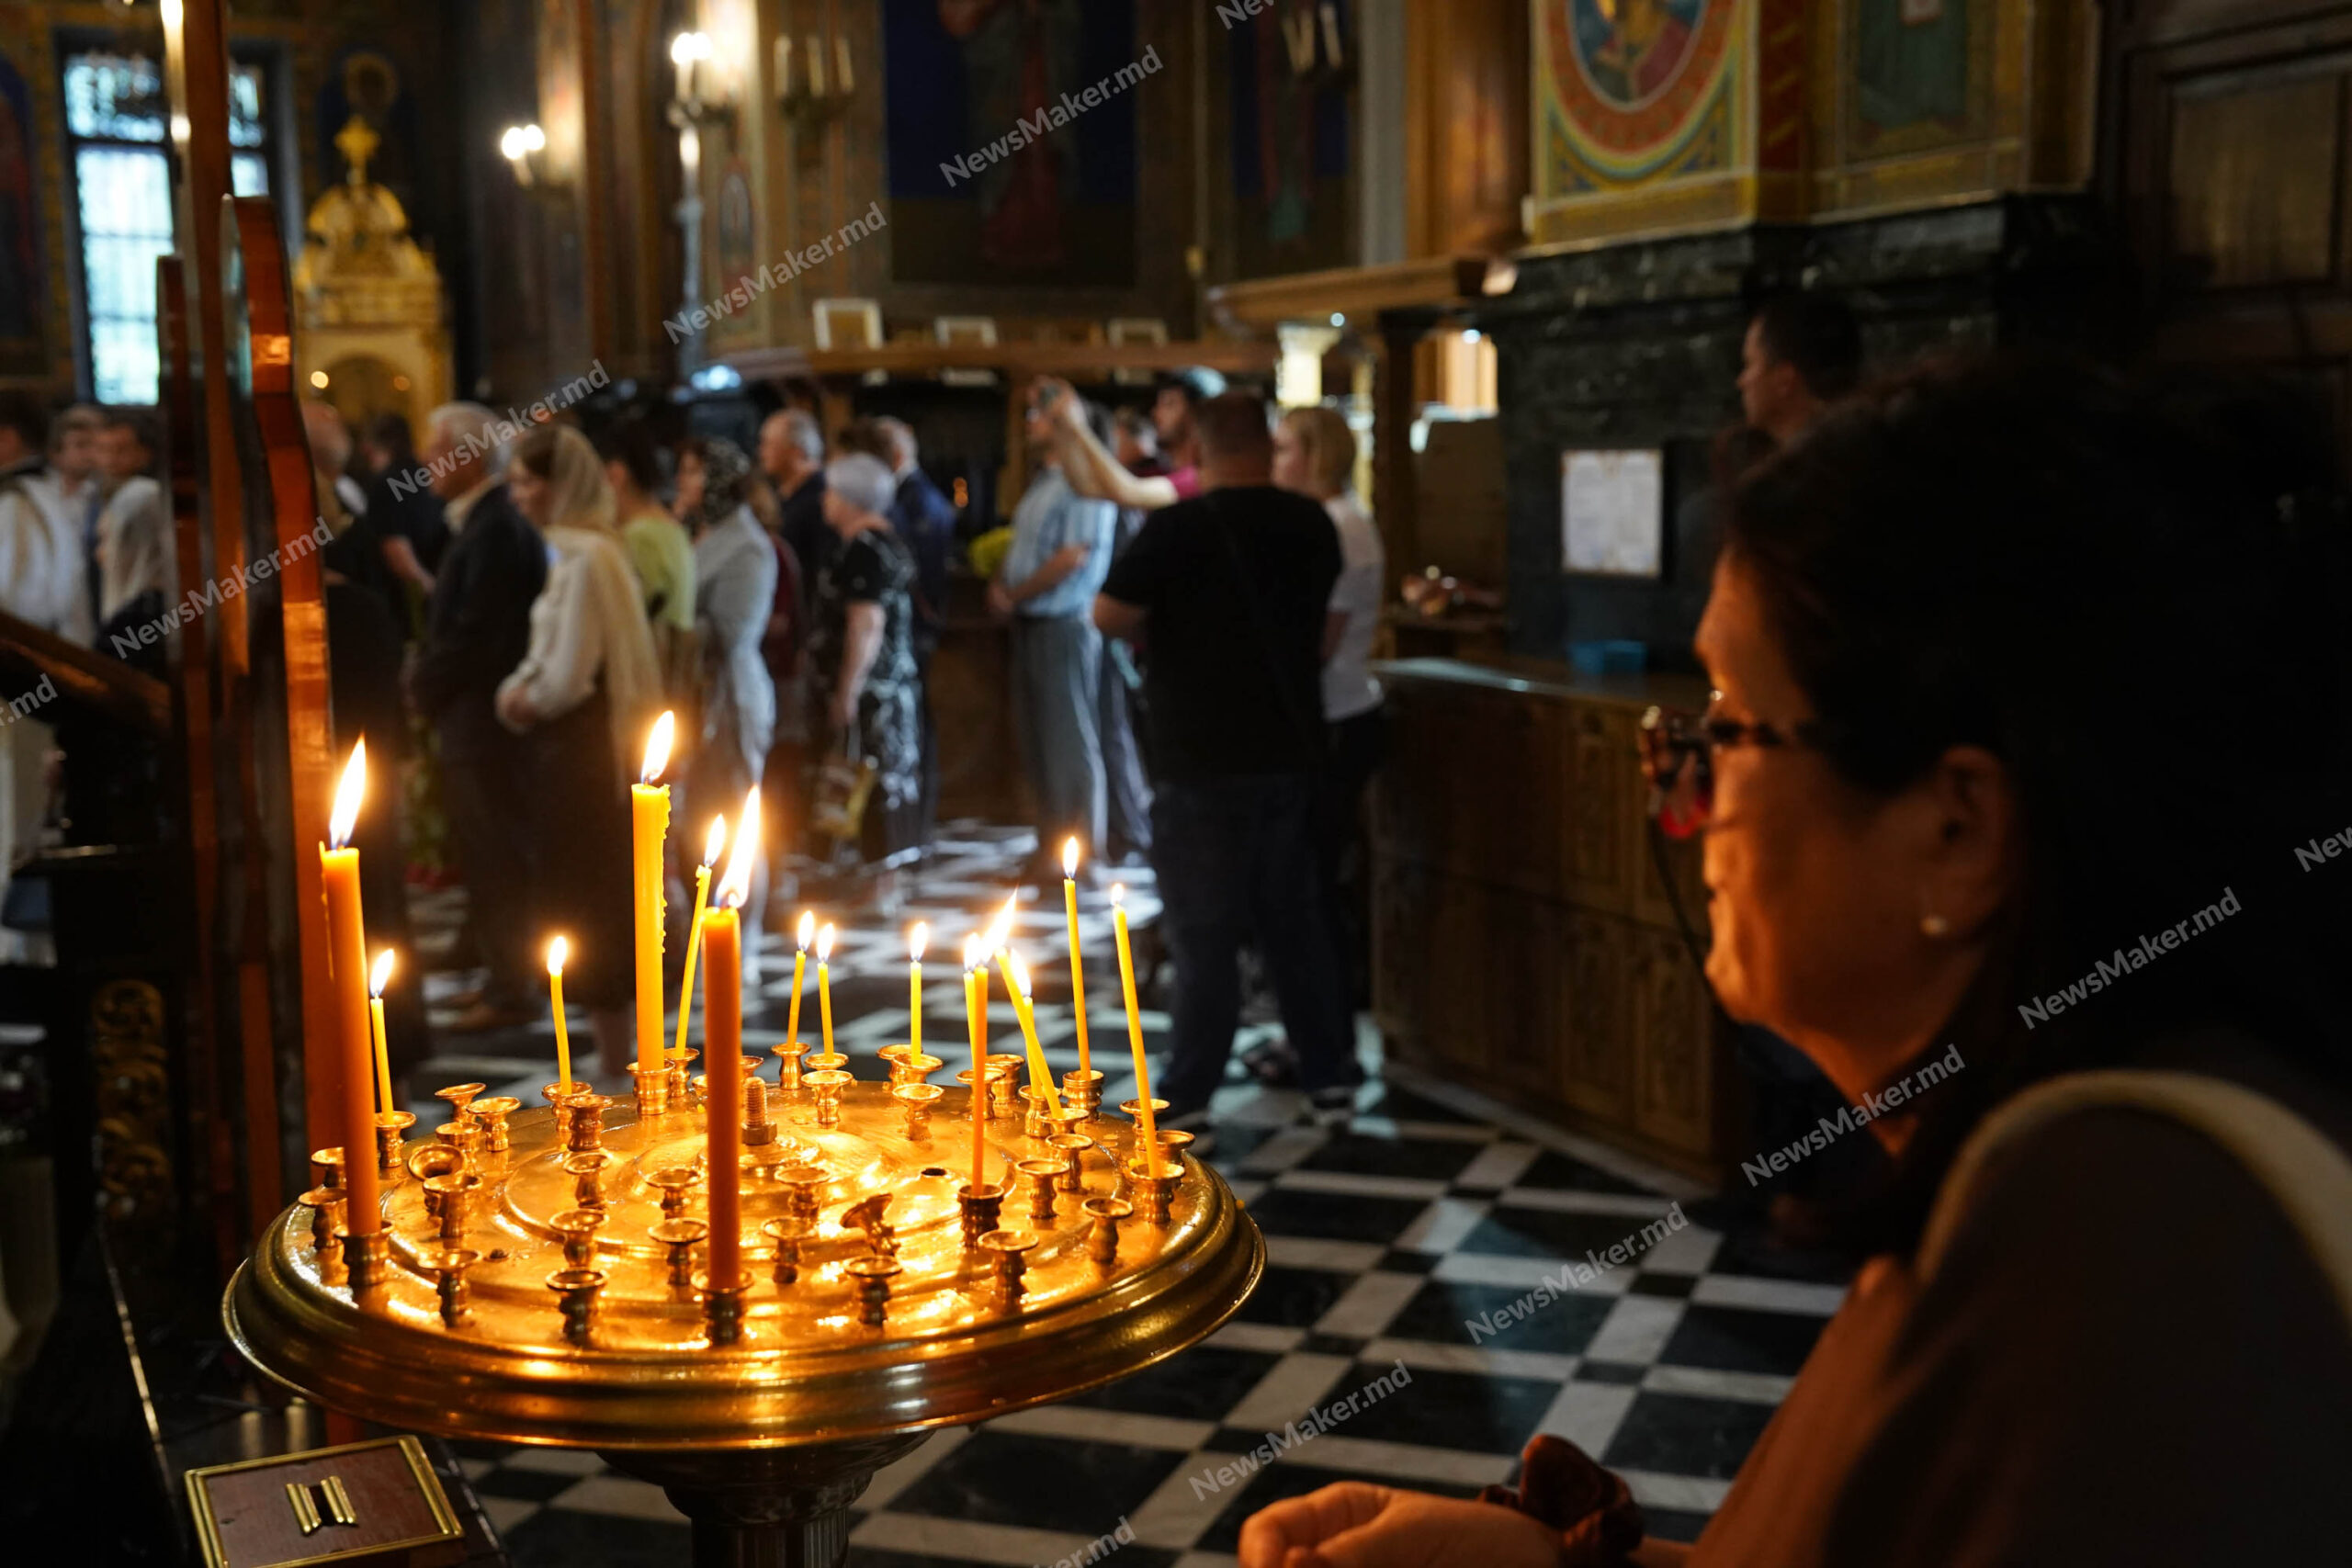 Zeci de oameni au venit la Catedrala „Nașterea Domnului” pentru a-și lua rămas bun de la Mircea Snegur. Fotoreportaj NM